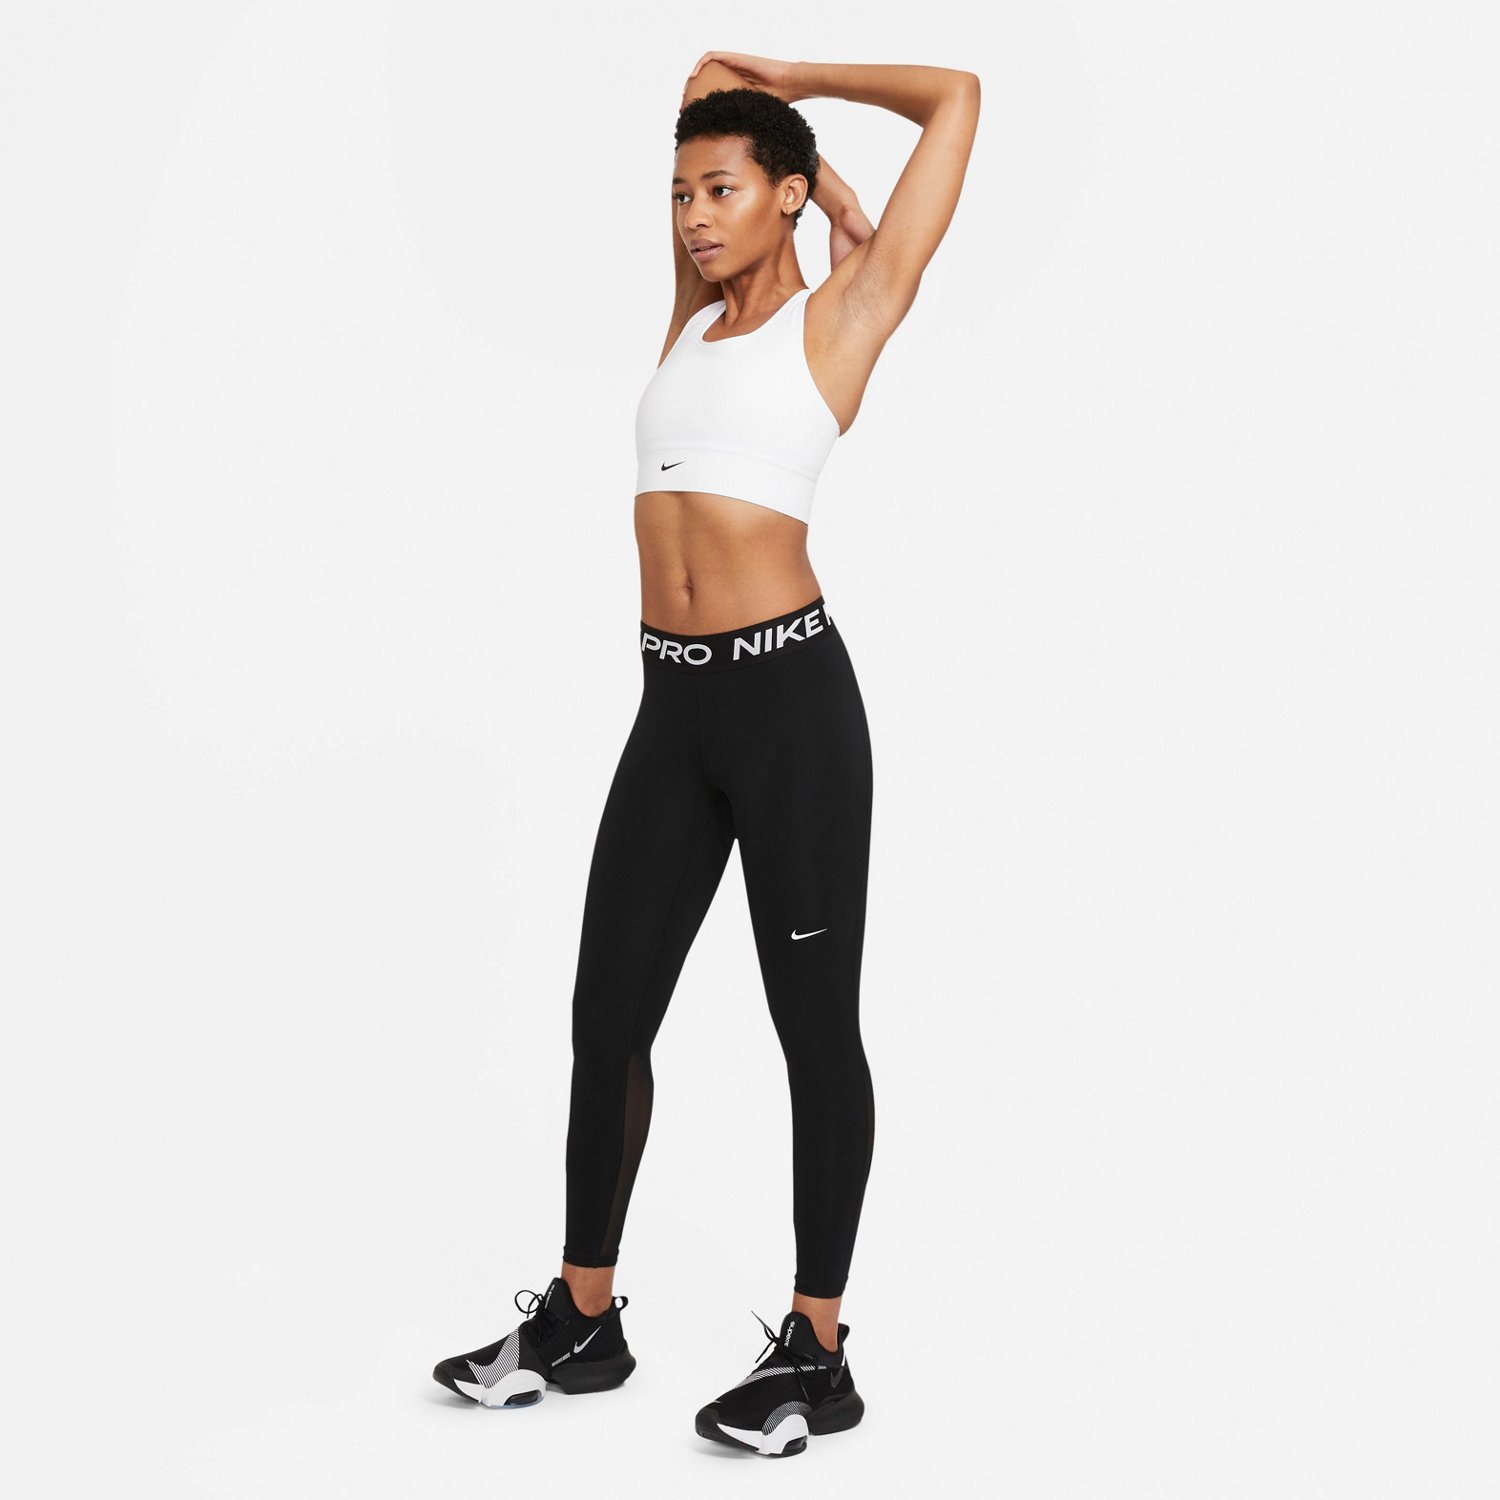 caldera Expectativa sencillo Nike Women'sPro 365 Tights | Academy